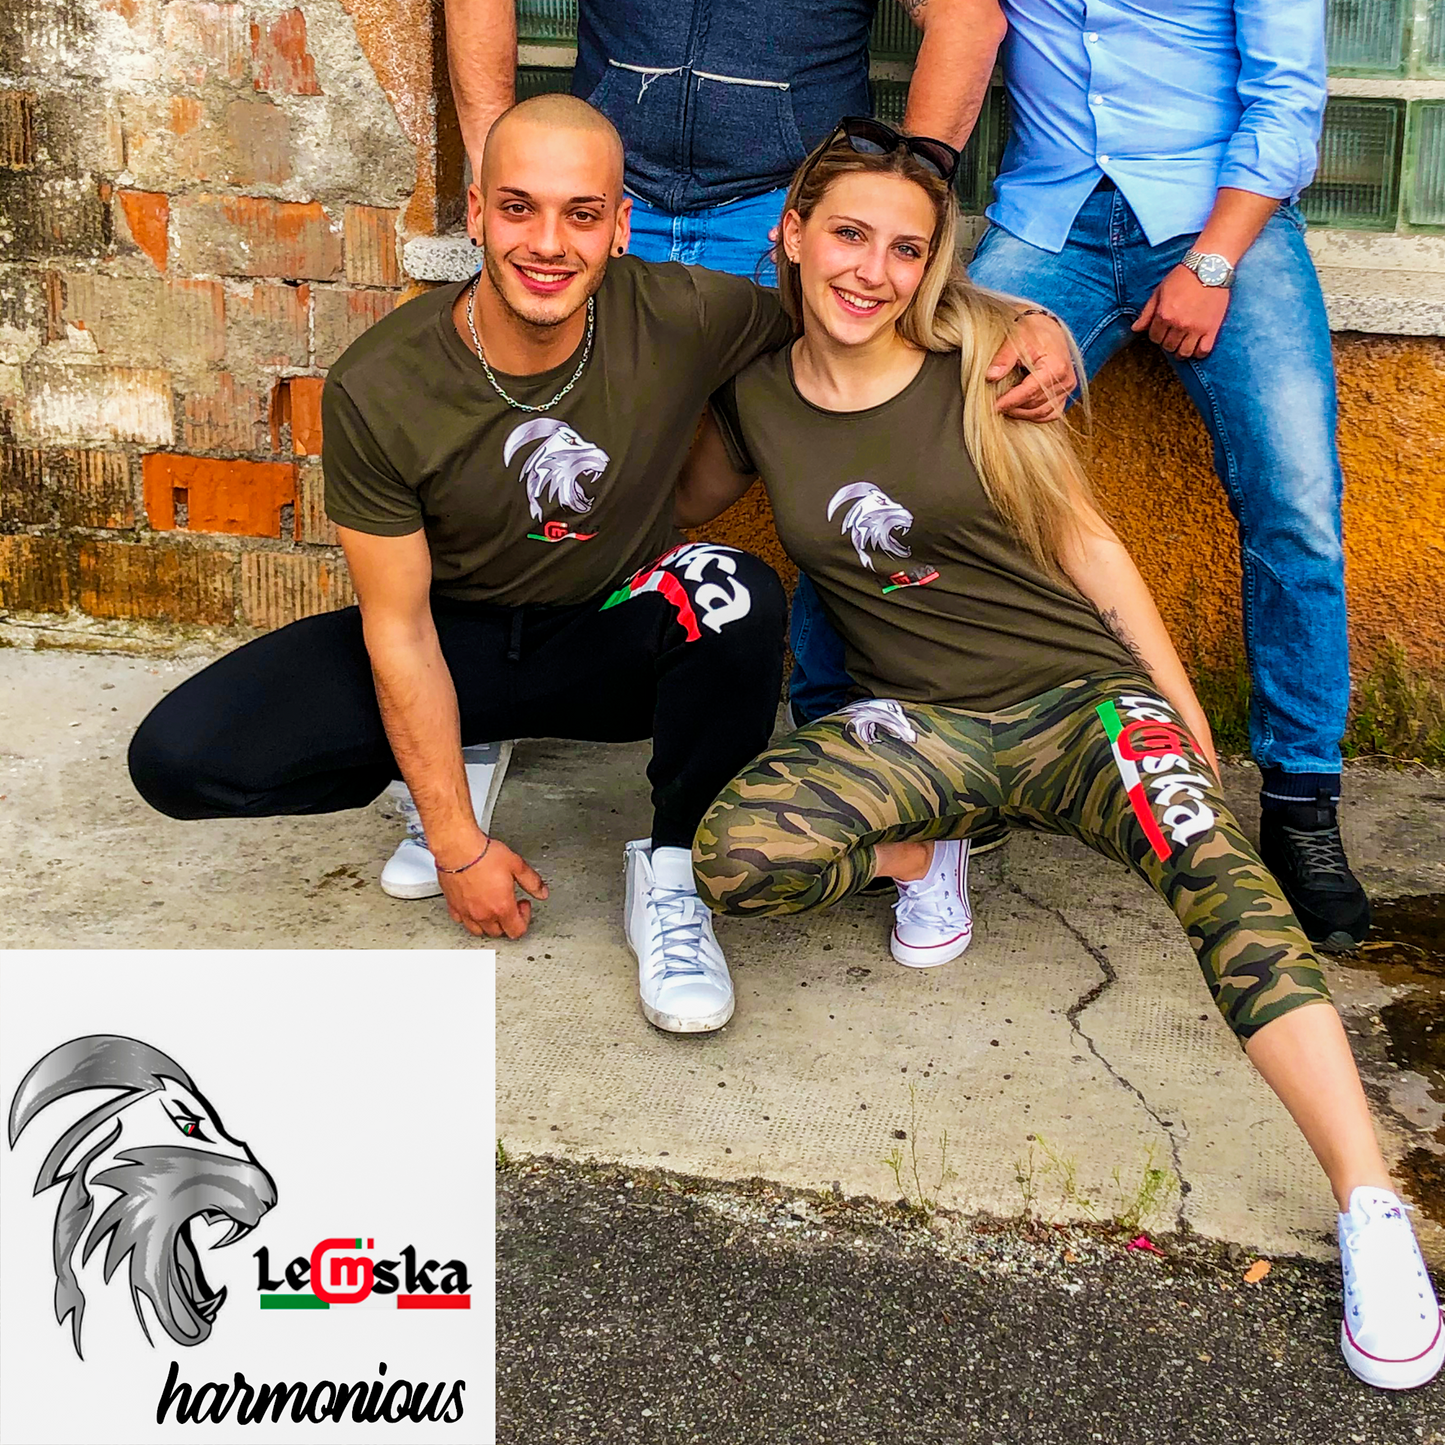 Leggings donna Leomska 3/4 militare 100% Made In Italy